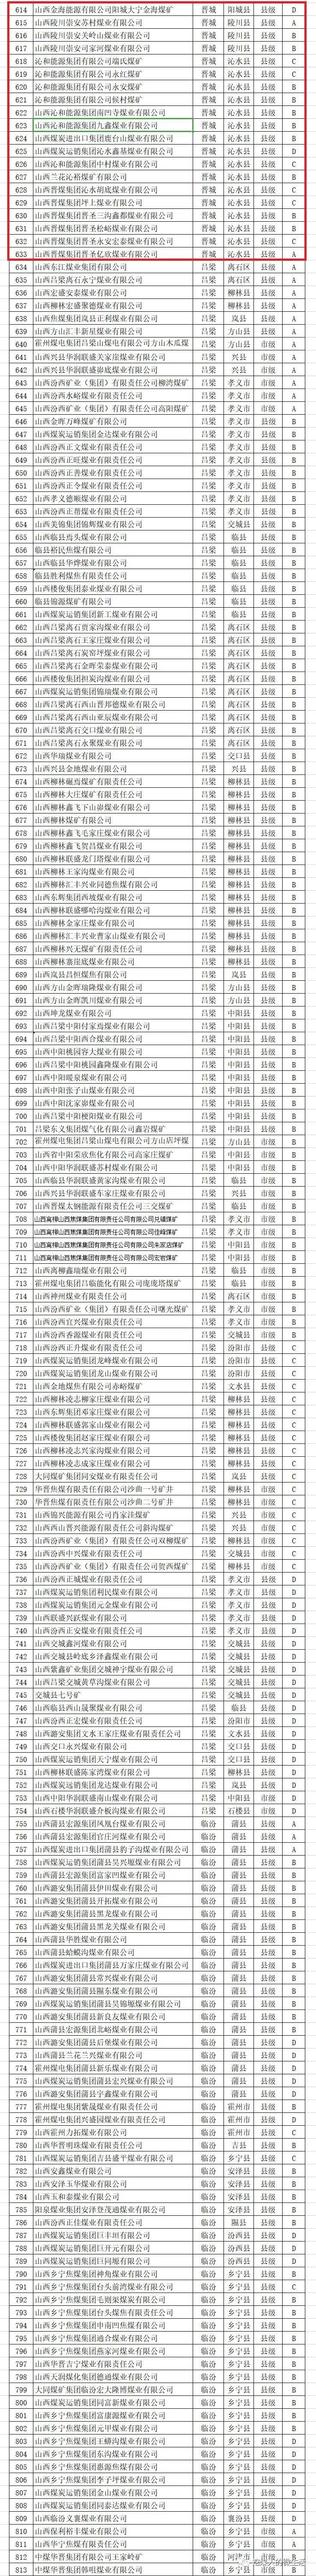 【速看】晋城上百家煤矿分类名单公布!